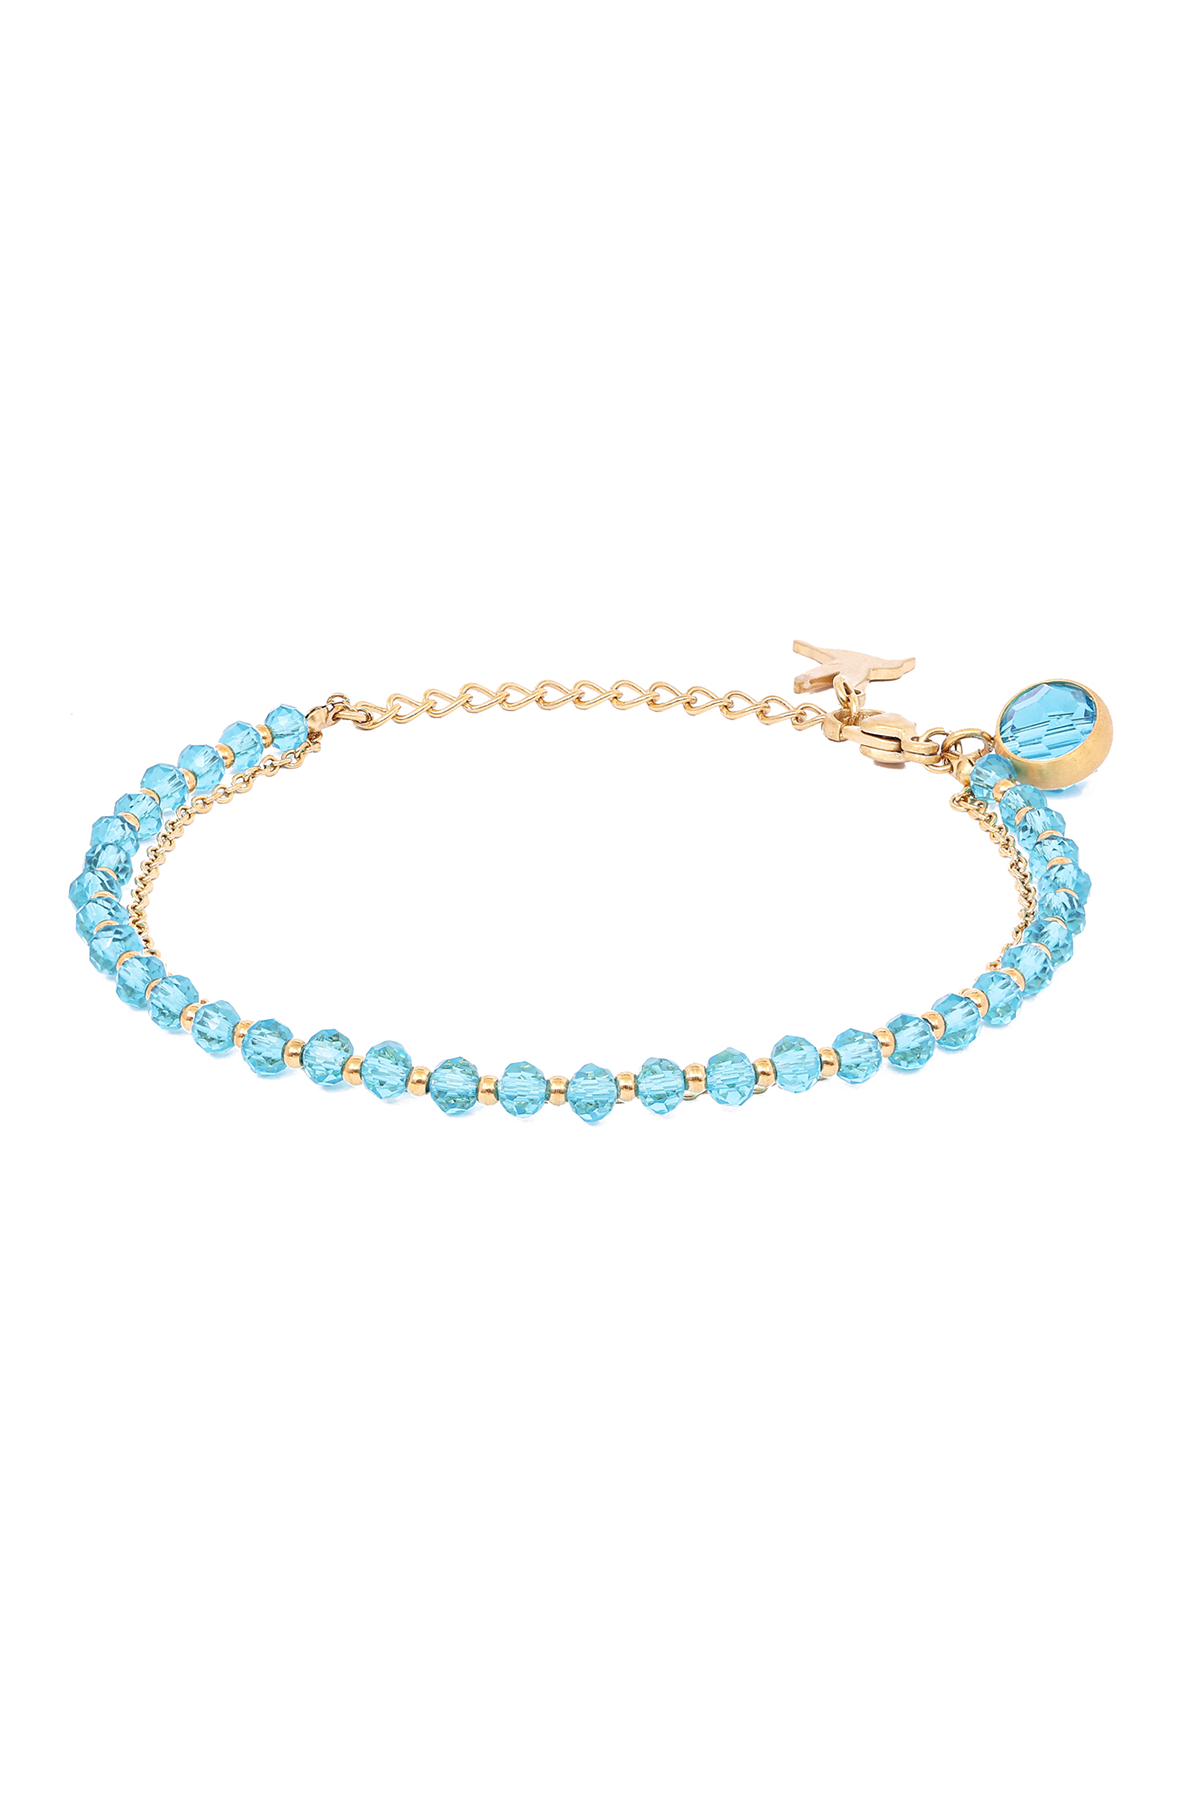 Iben crystal bracelet - Caribbean sea